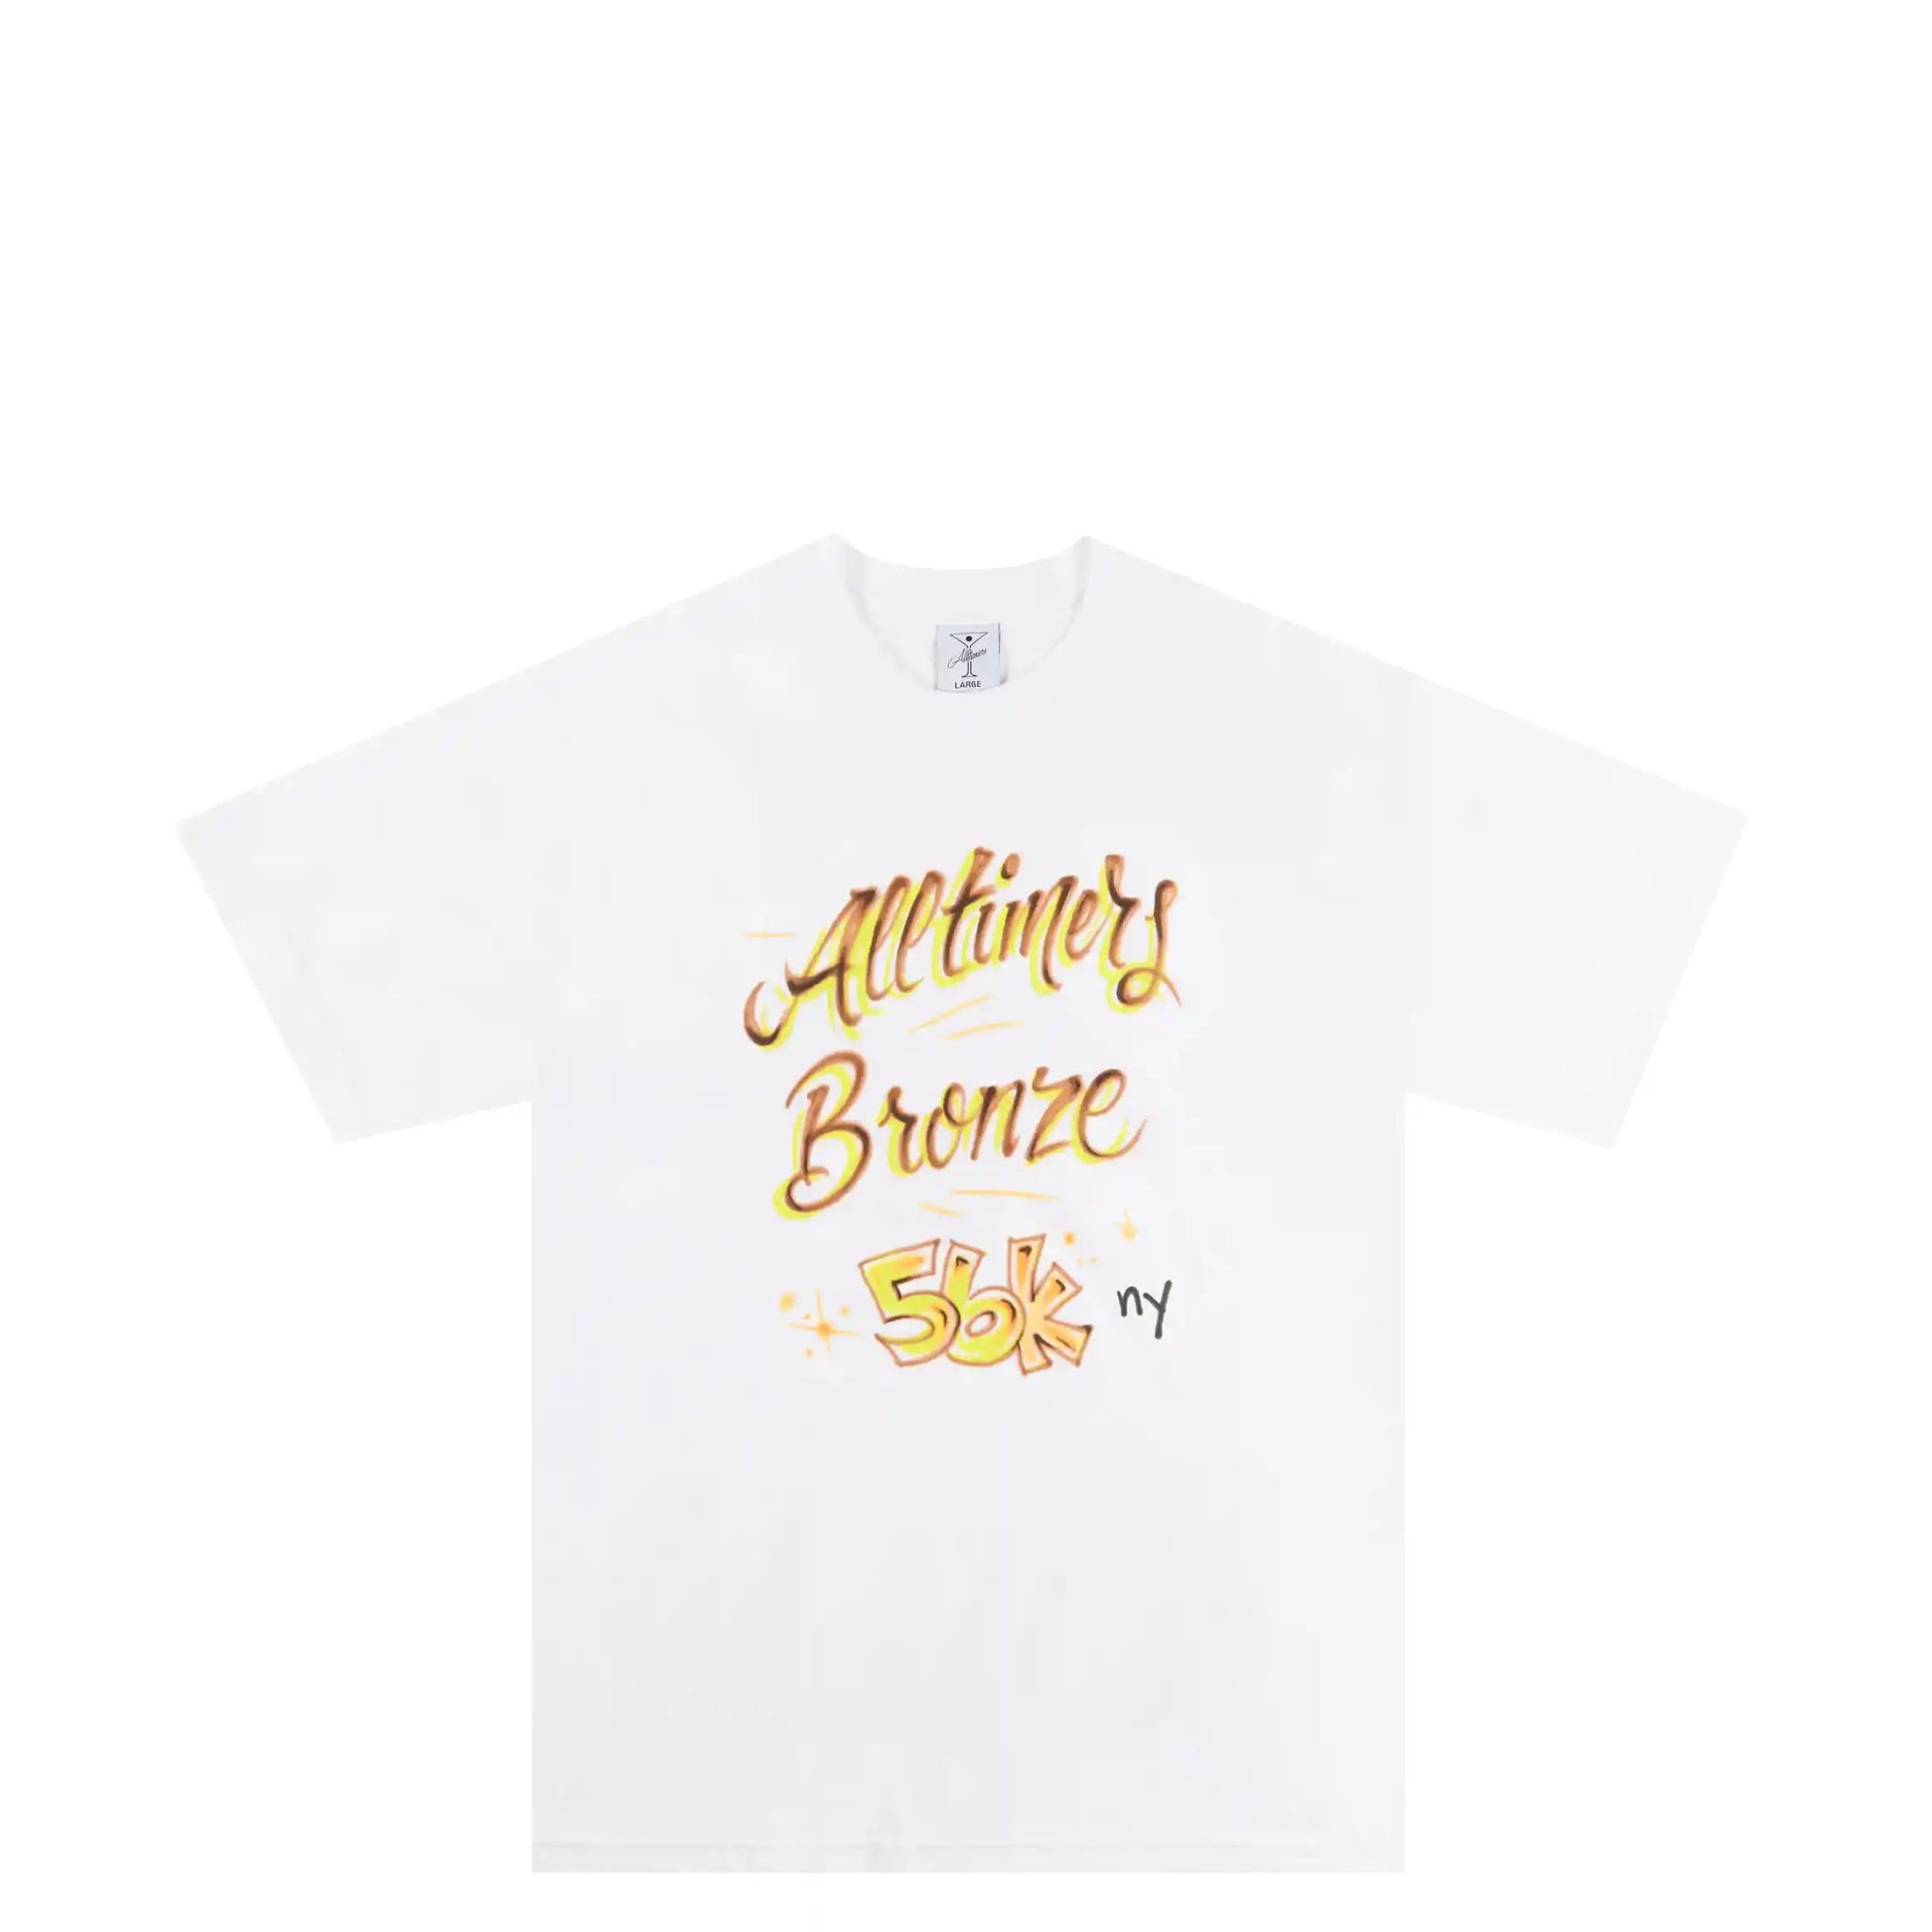 Alltimers x Bronze 56K Lounge T-Shirt, white - Tiki Room Skateboards - 2